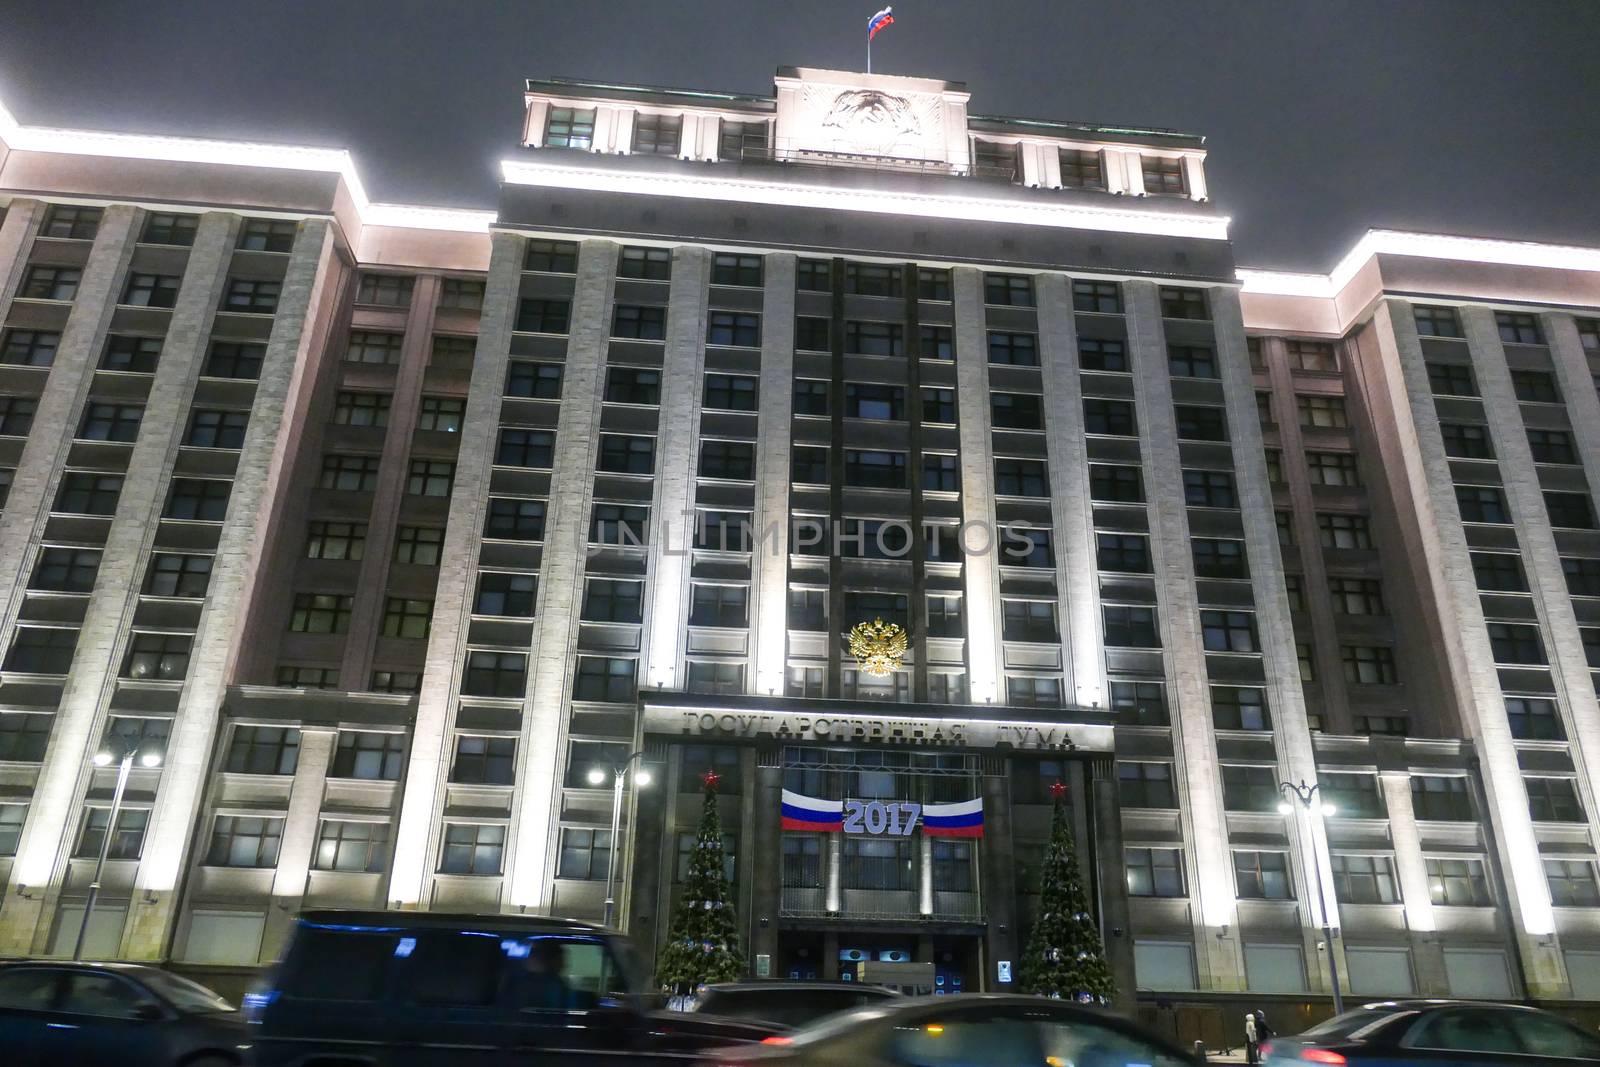 Russian State Duma 2017